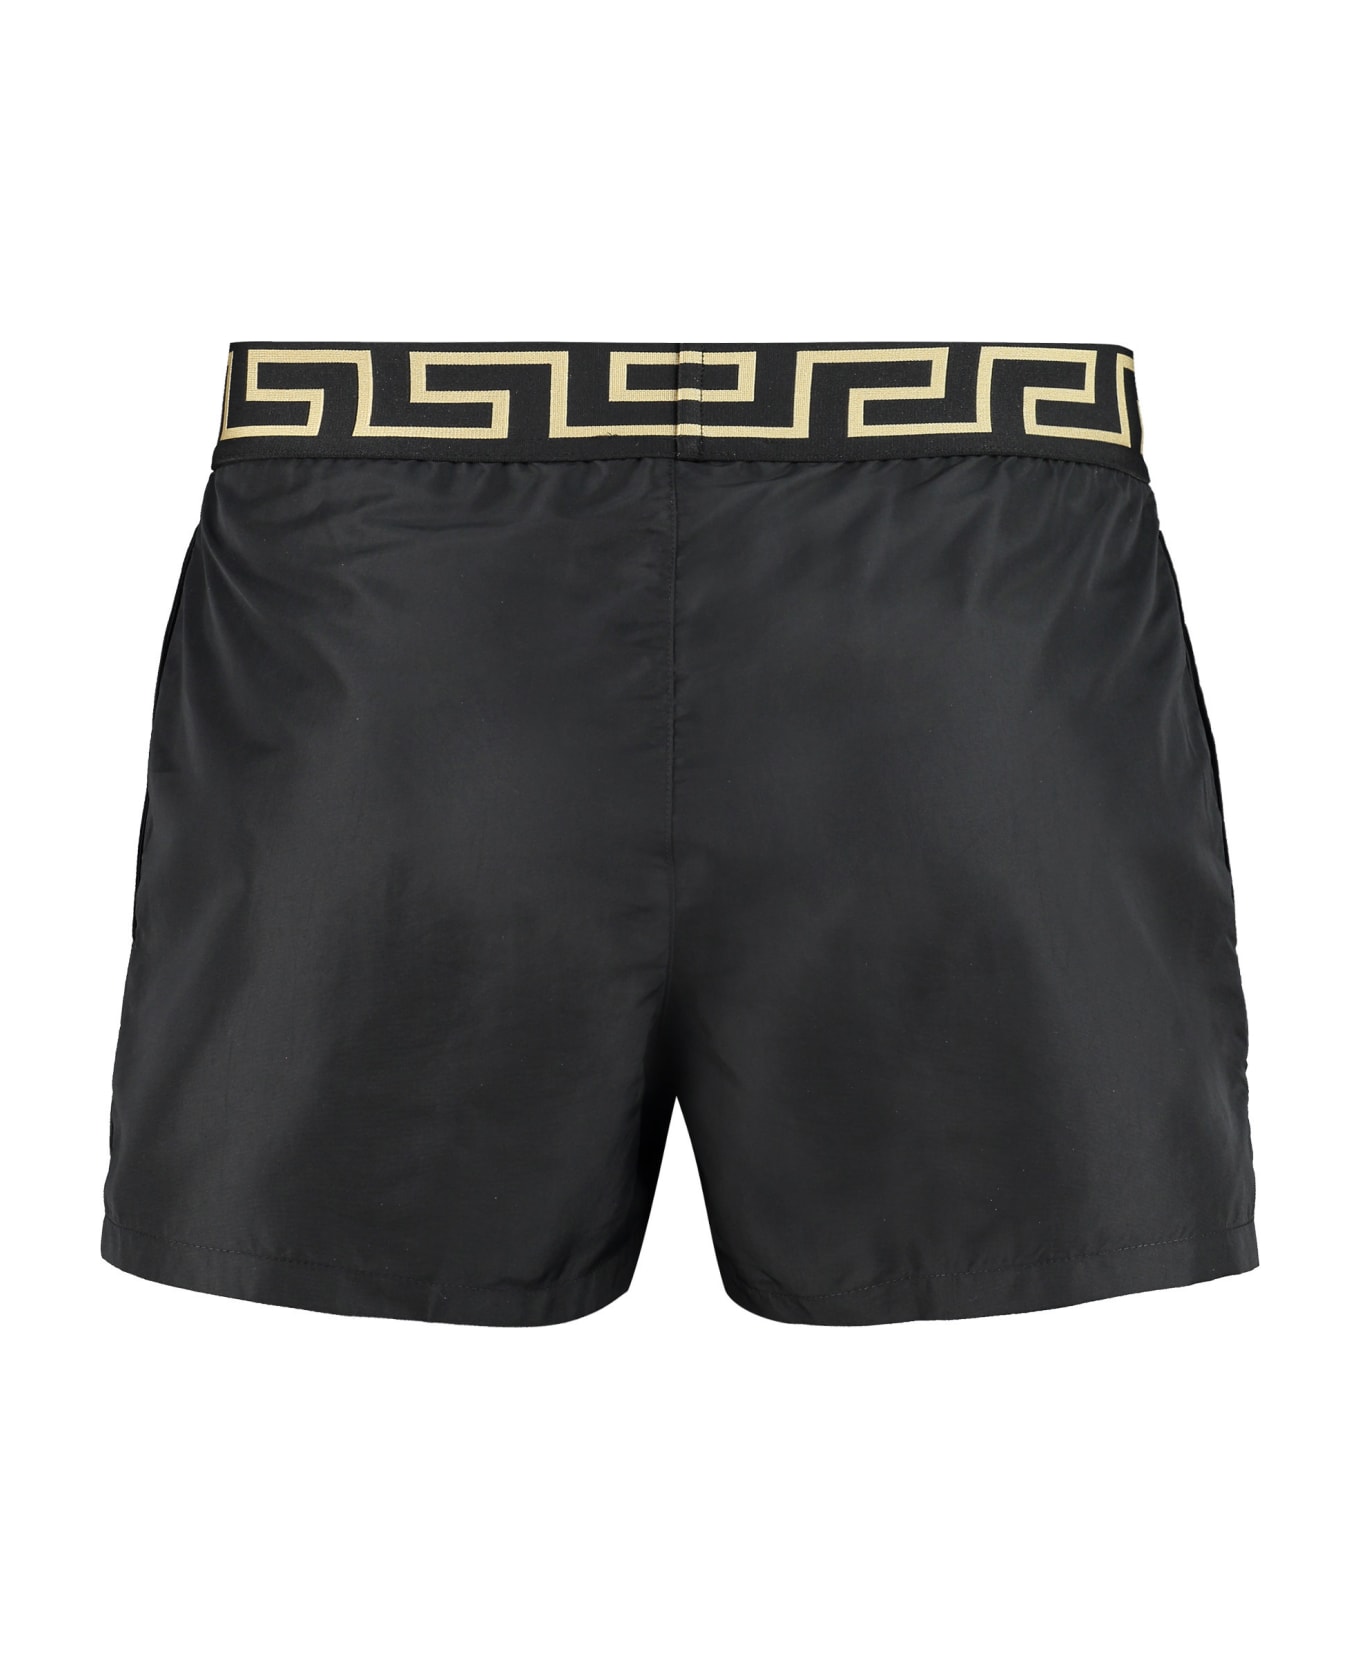 Versace Swim Shorts - Nero greca oro